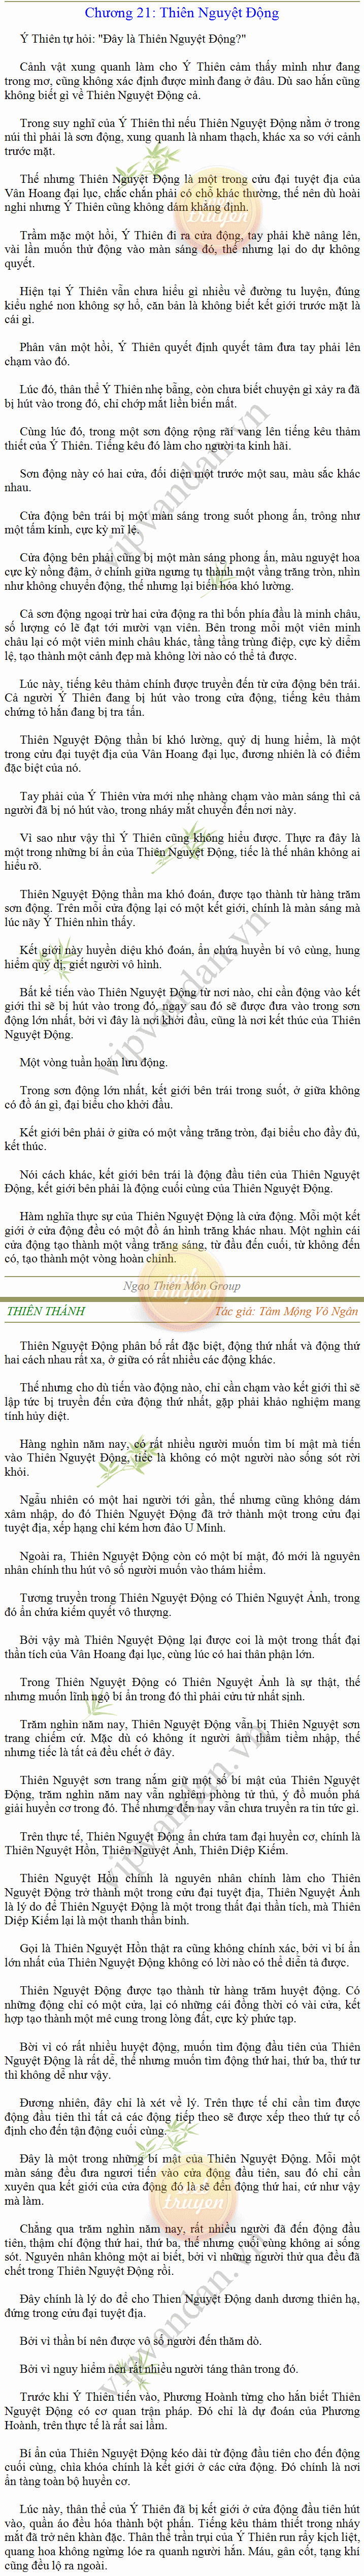 Thiên Thánh - Tâm Mộng Vô Ngân New Q 6 - Chương 68